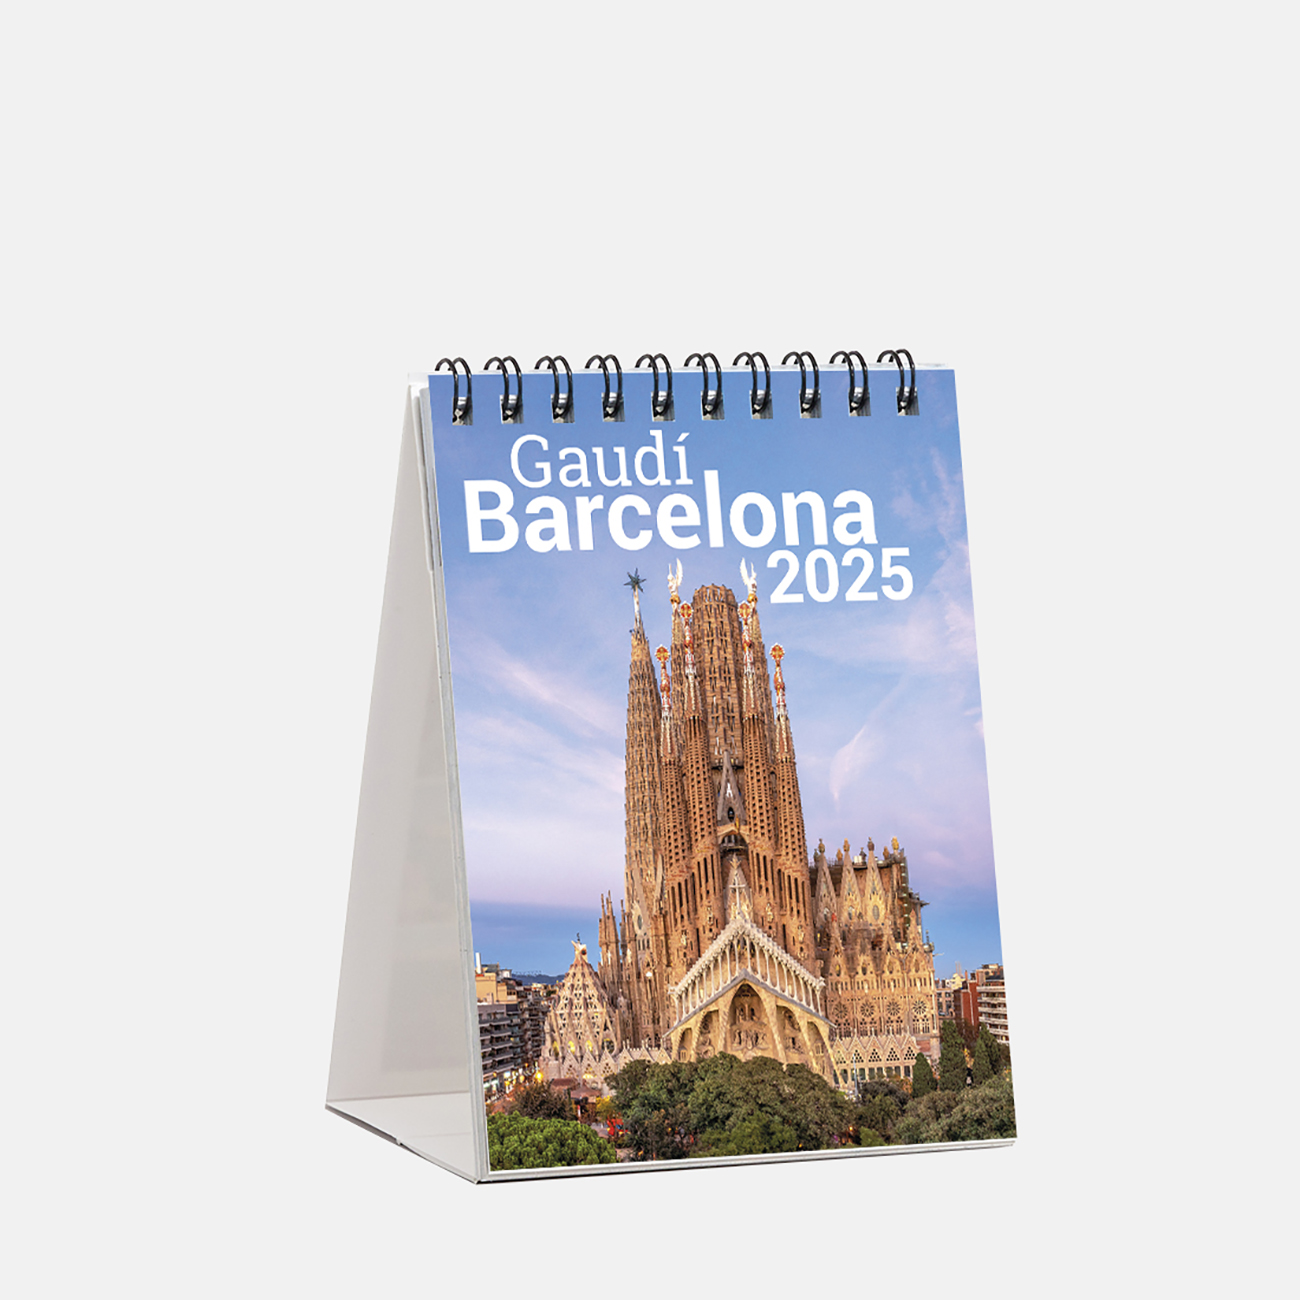 Calendari 2025 Gaudí sm25g2 calendario mini 2025 gaudi